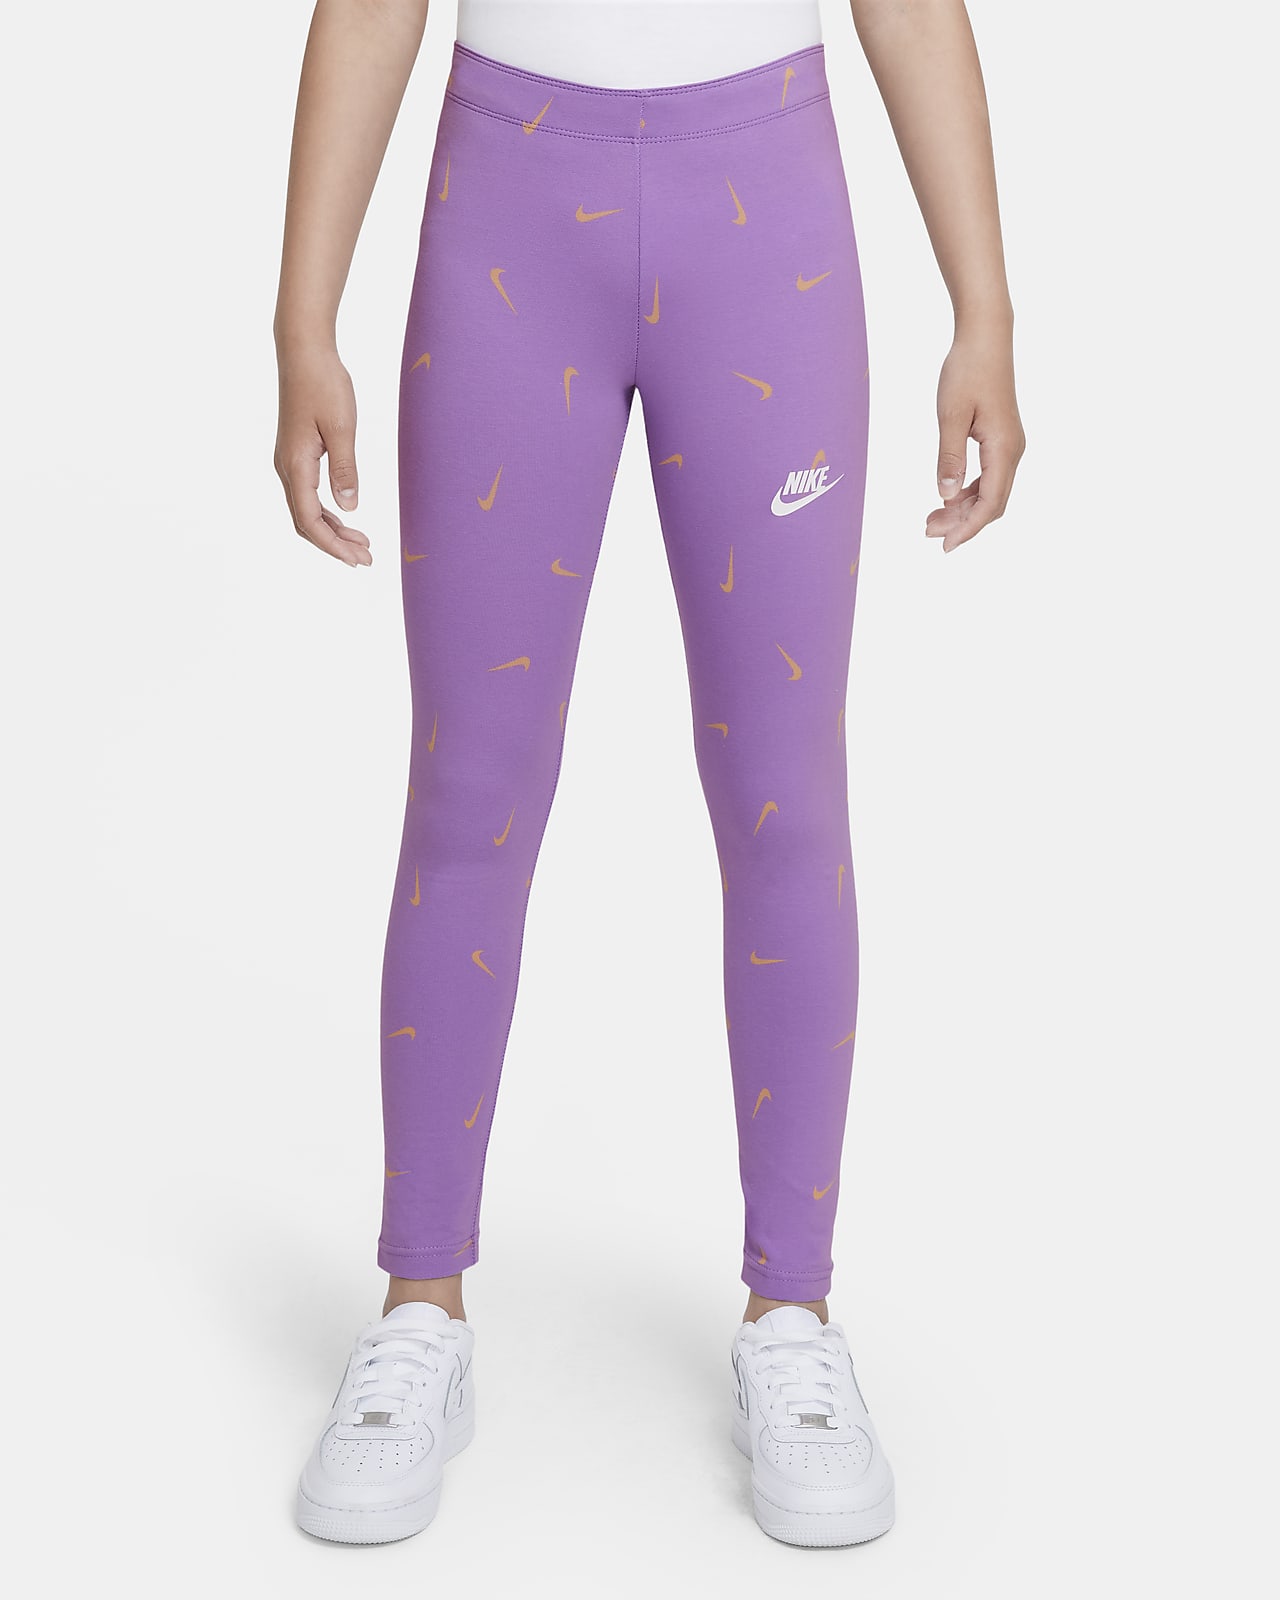 Nike - Girls Purple Logo Leggings Set